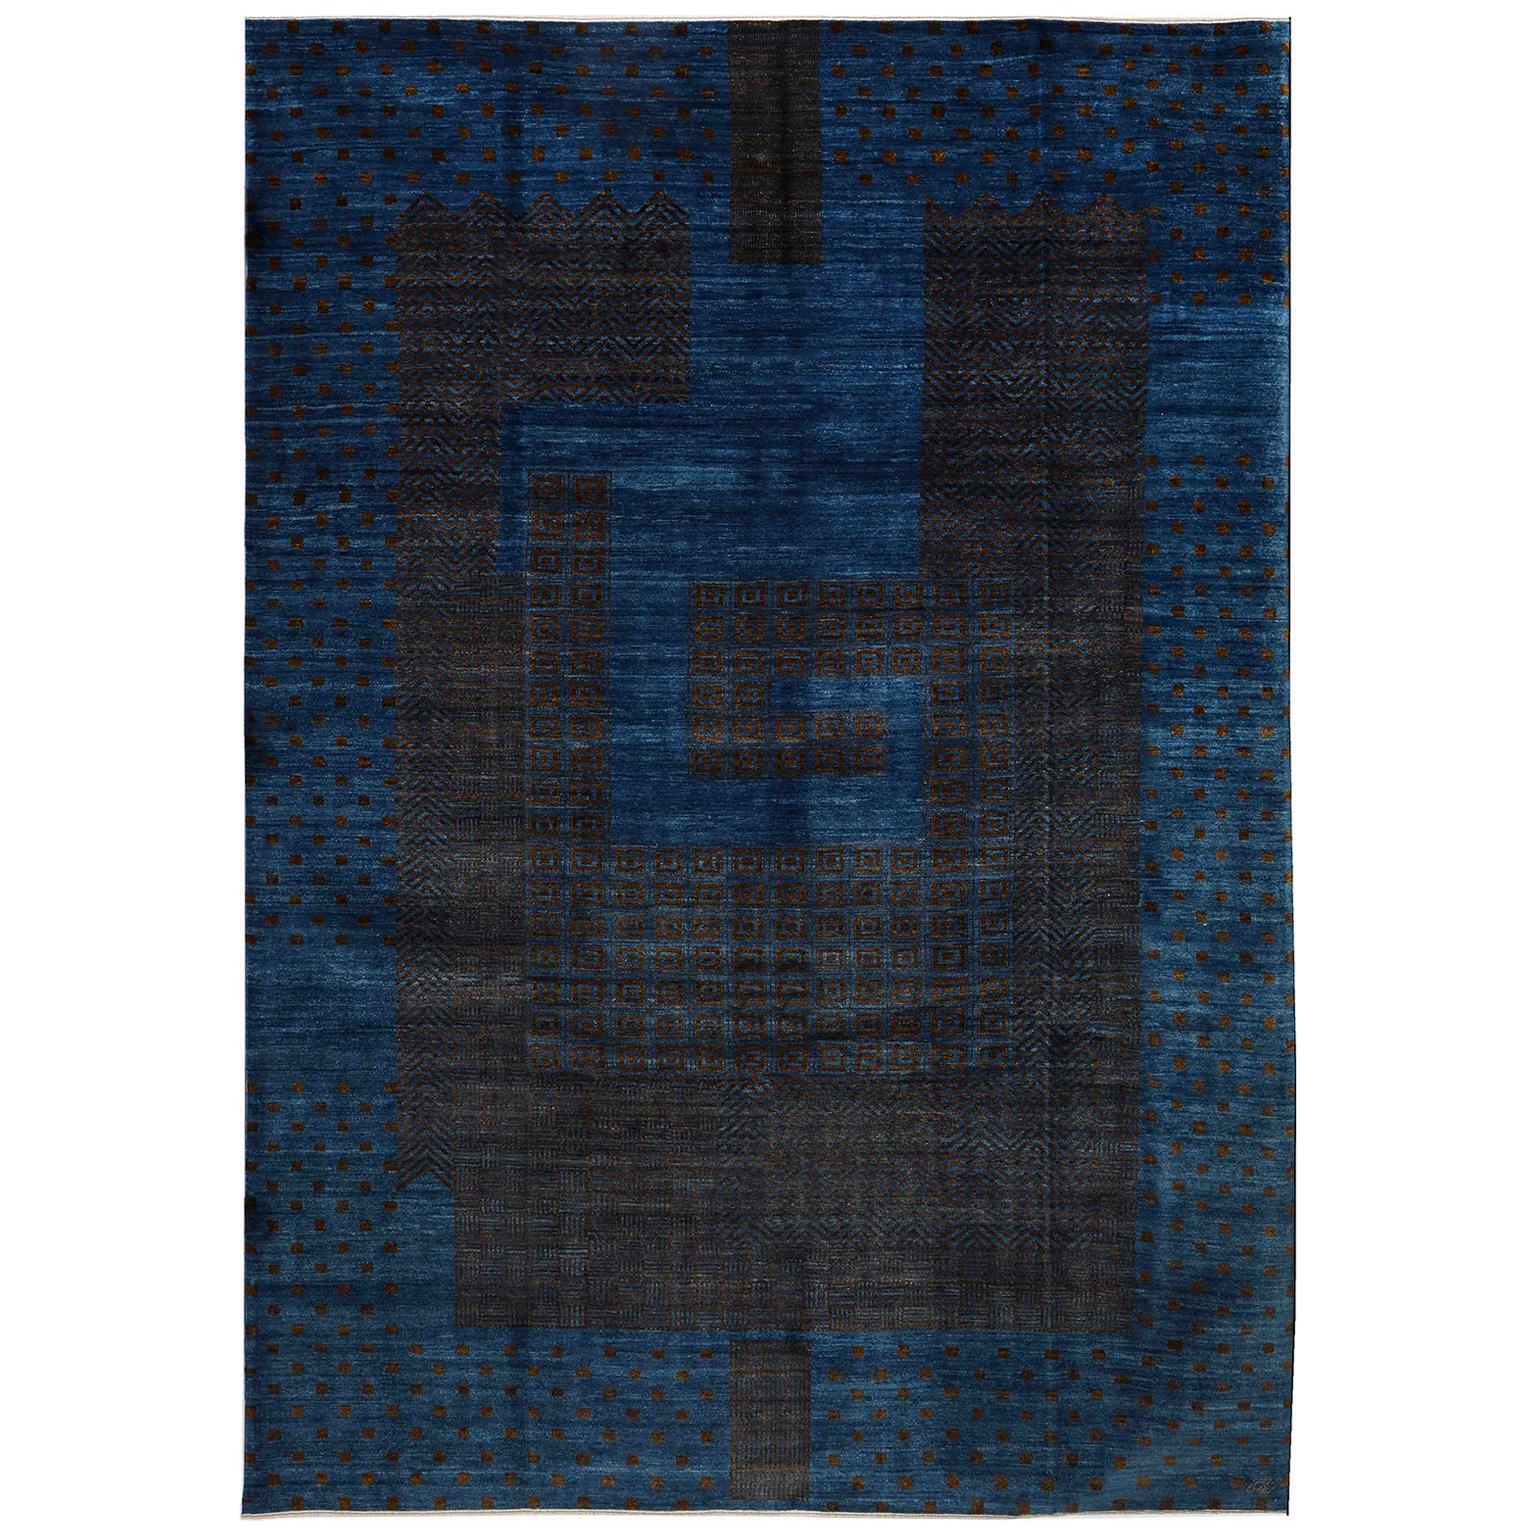 Tapis persan contemporain en laine Orley Shabahang, bleu et Brown, 9' x 12'